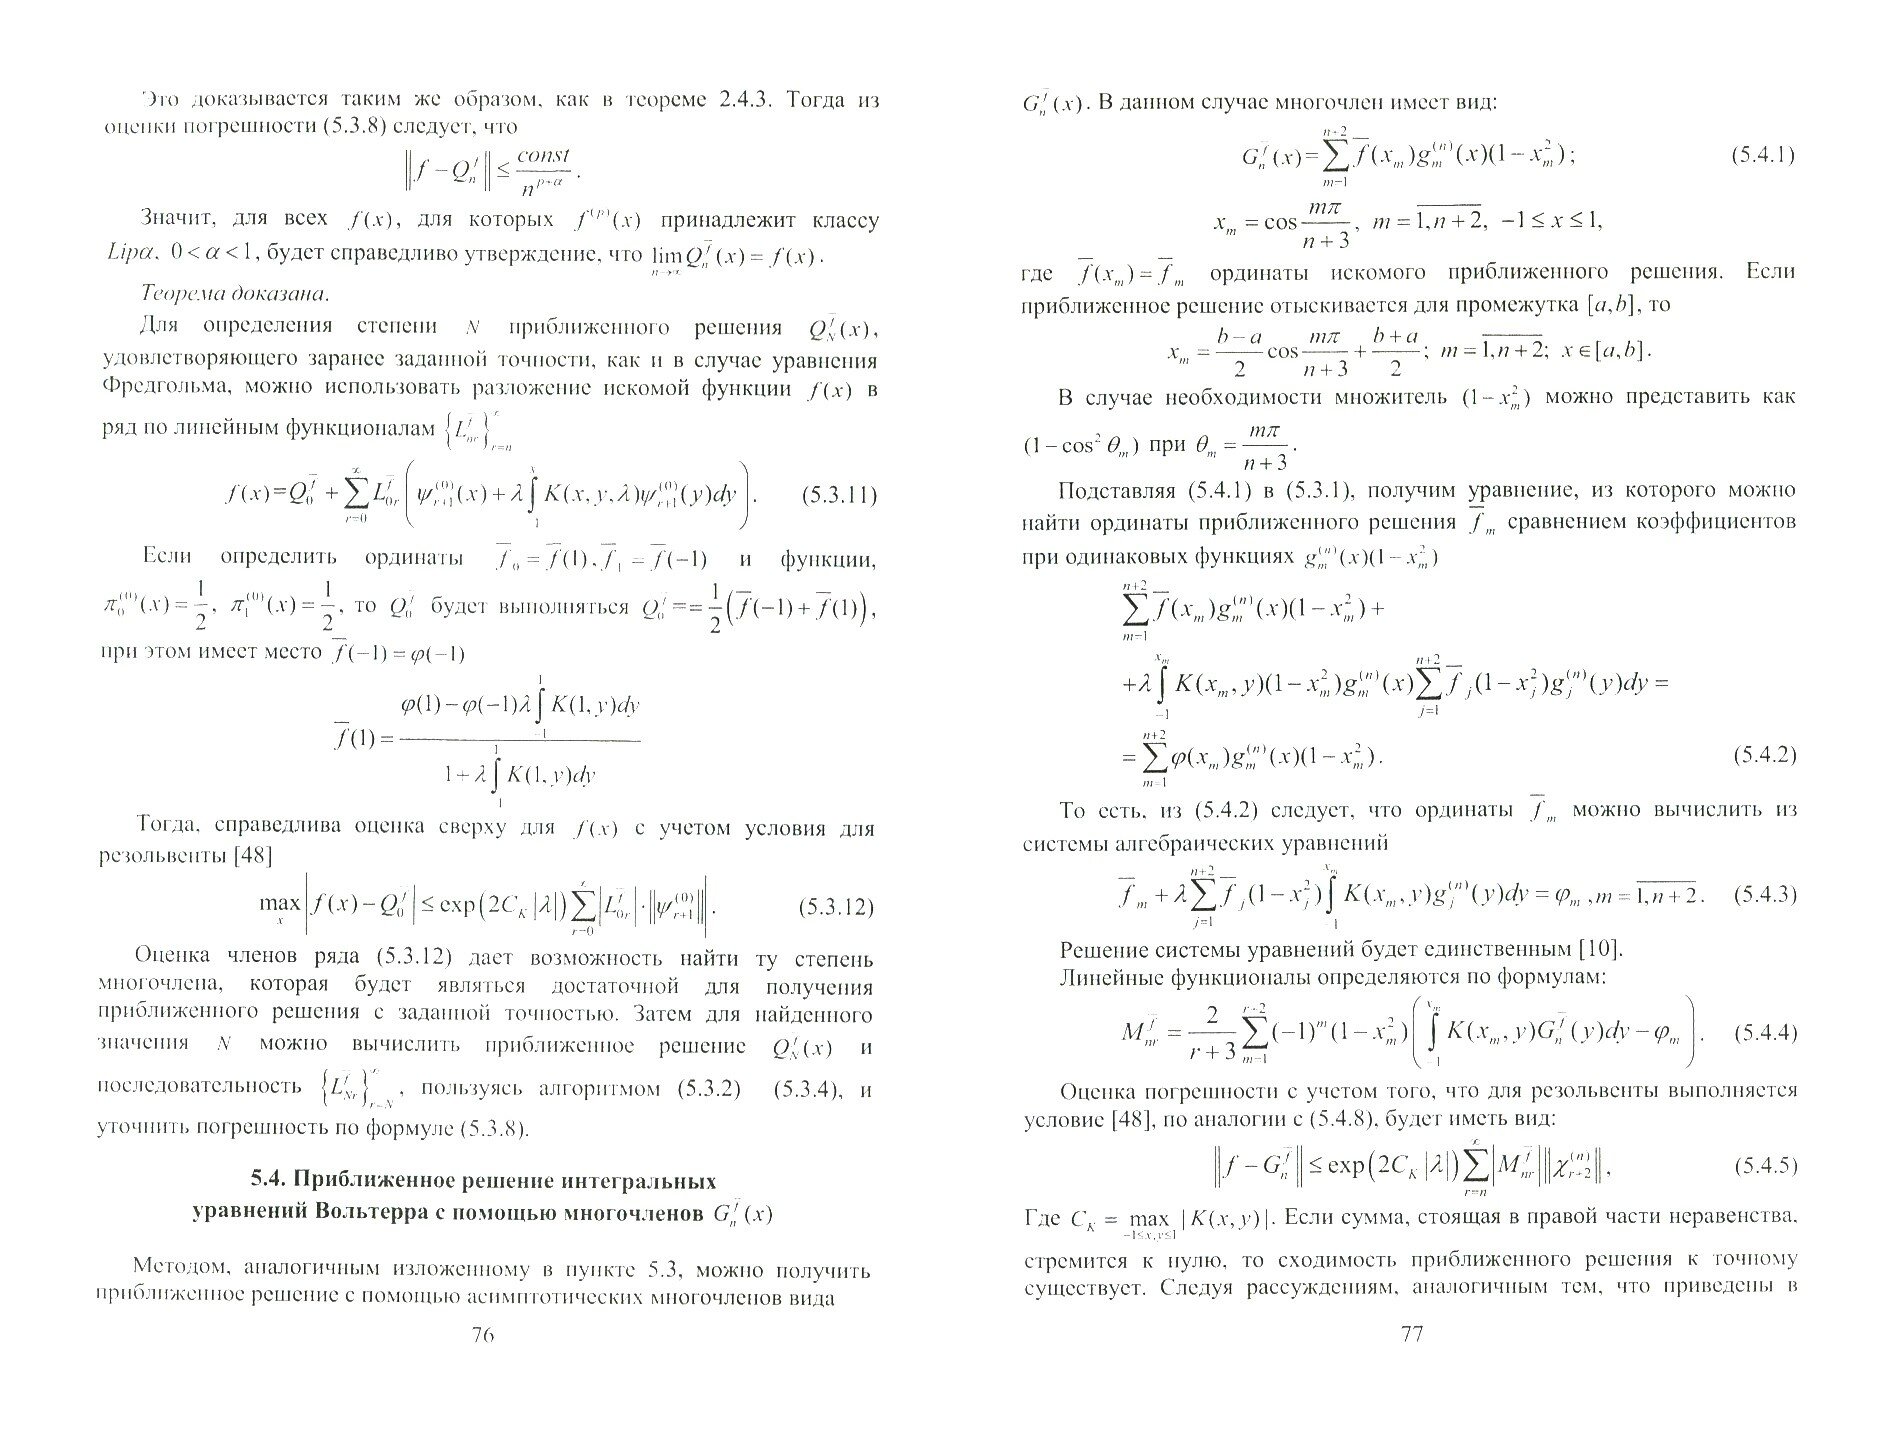 Эффективные методы равномерных приближений, основанные на полиномах Чебышева - фото №2